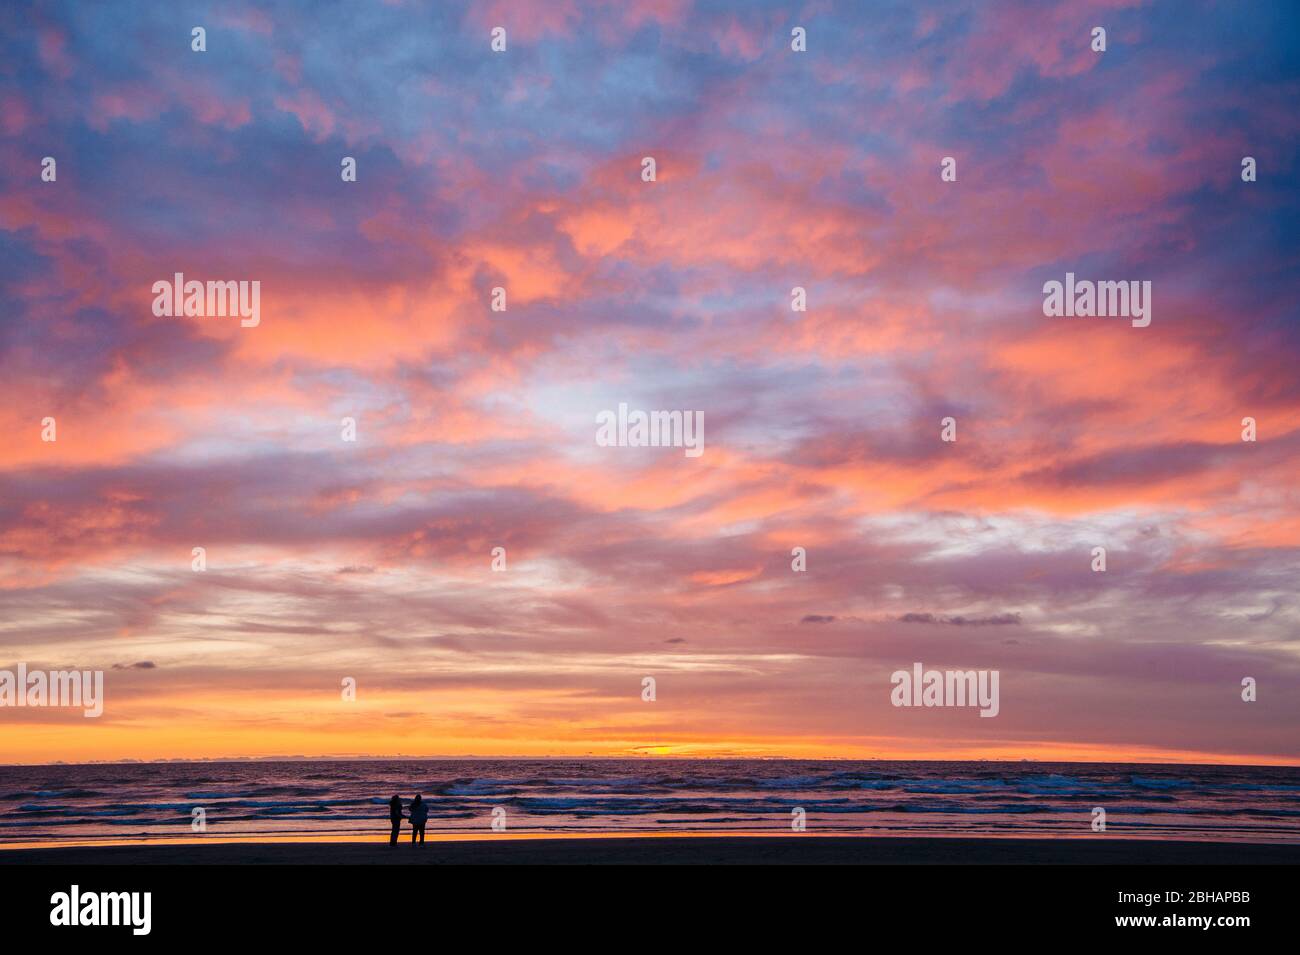 Silhouette di due persone in piedi sulla spiaggia contro il cielo drammatico al tramonto, Seaside, Oregon, Stati Uniti Foto Stock